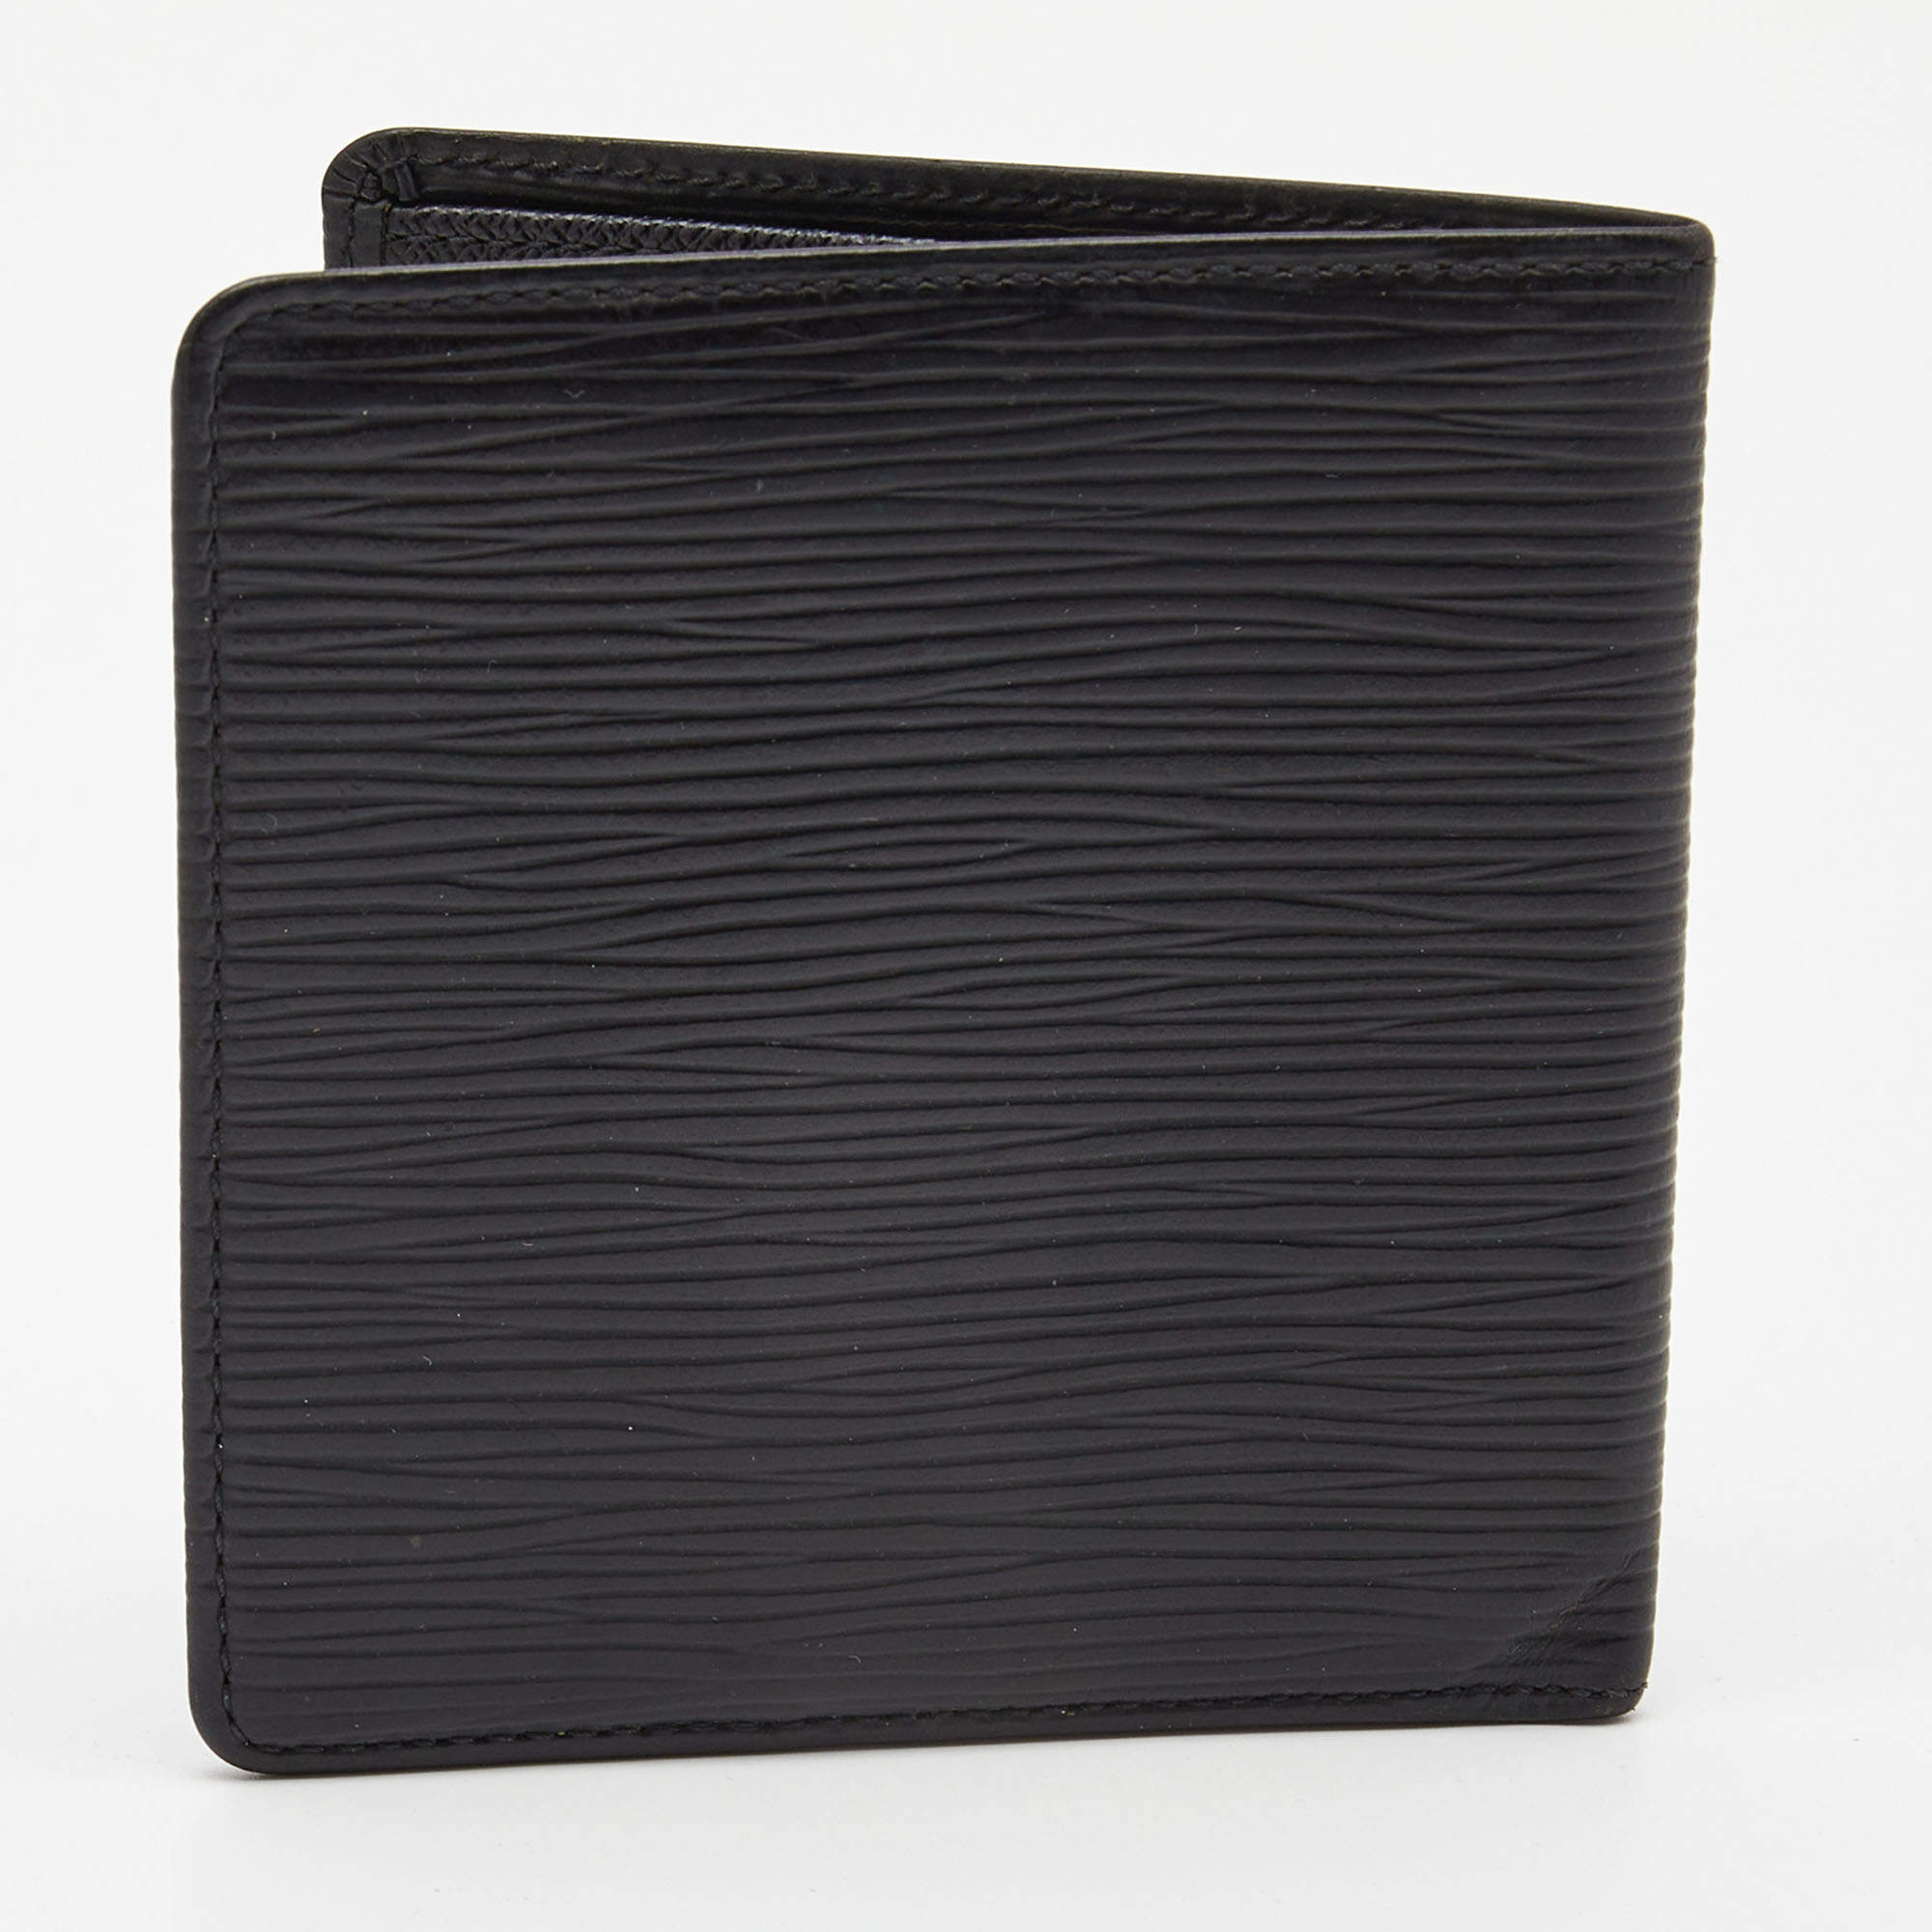 Louis Vuitton Epi Leather Grenelle Compact Wallet - Black Wallets